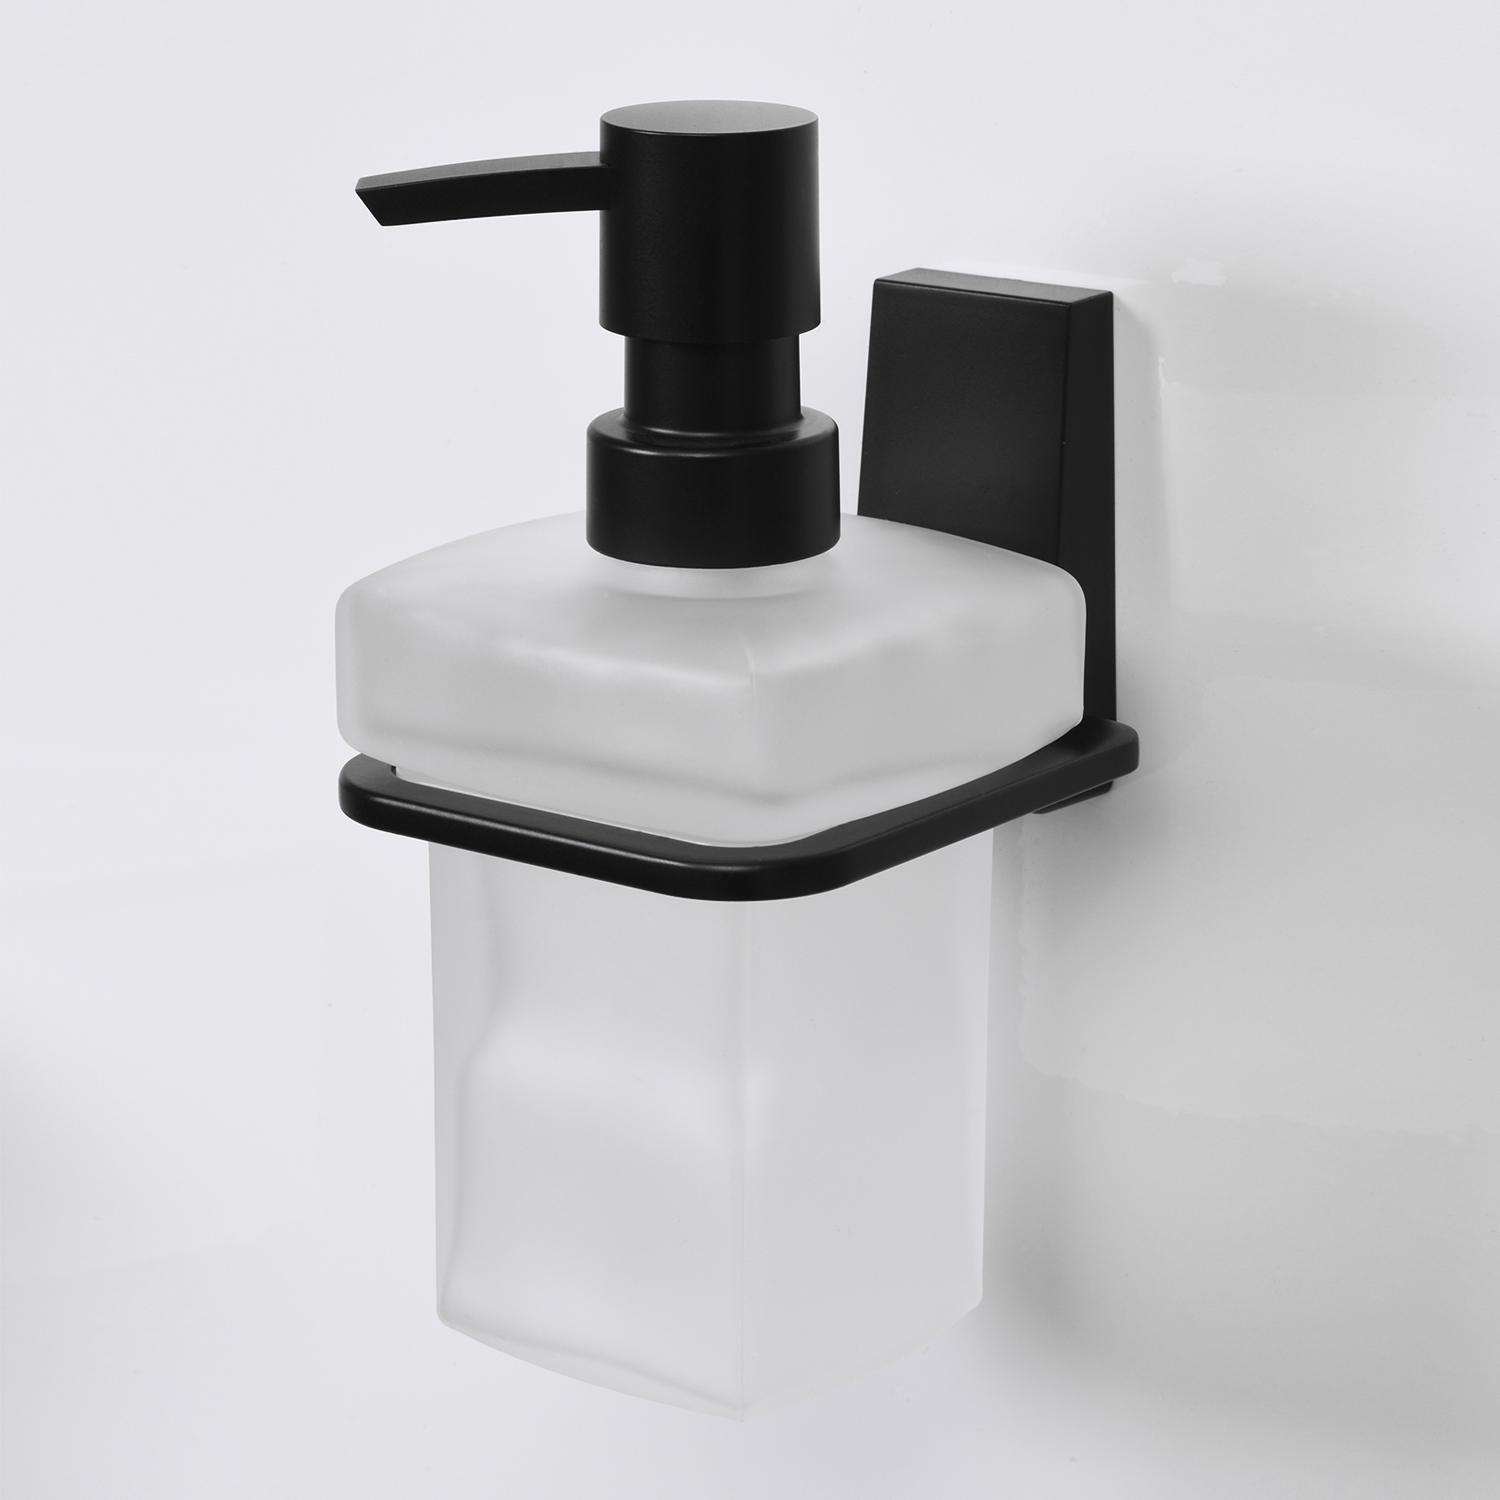 Дозатор WasserKRAFT Abens K-3299 для жидкого мыла, подвесной, цвет черный